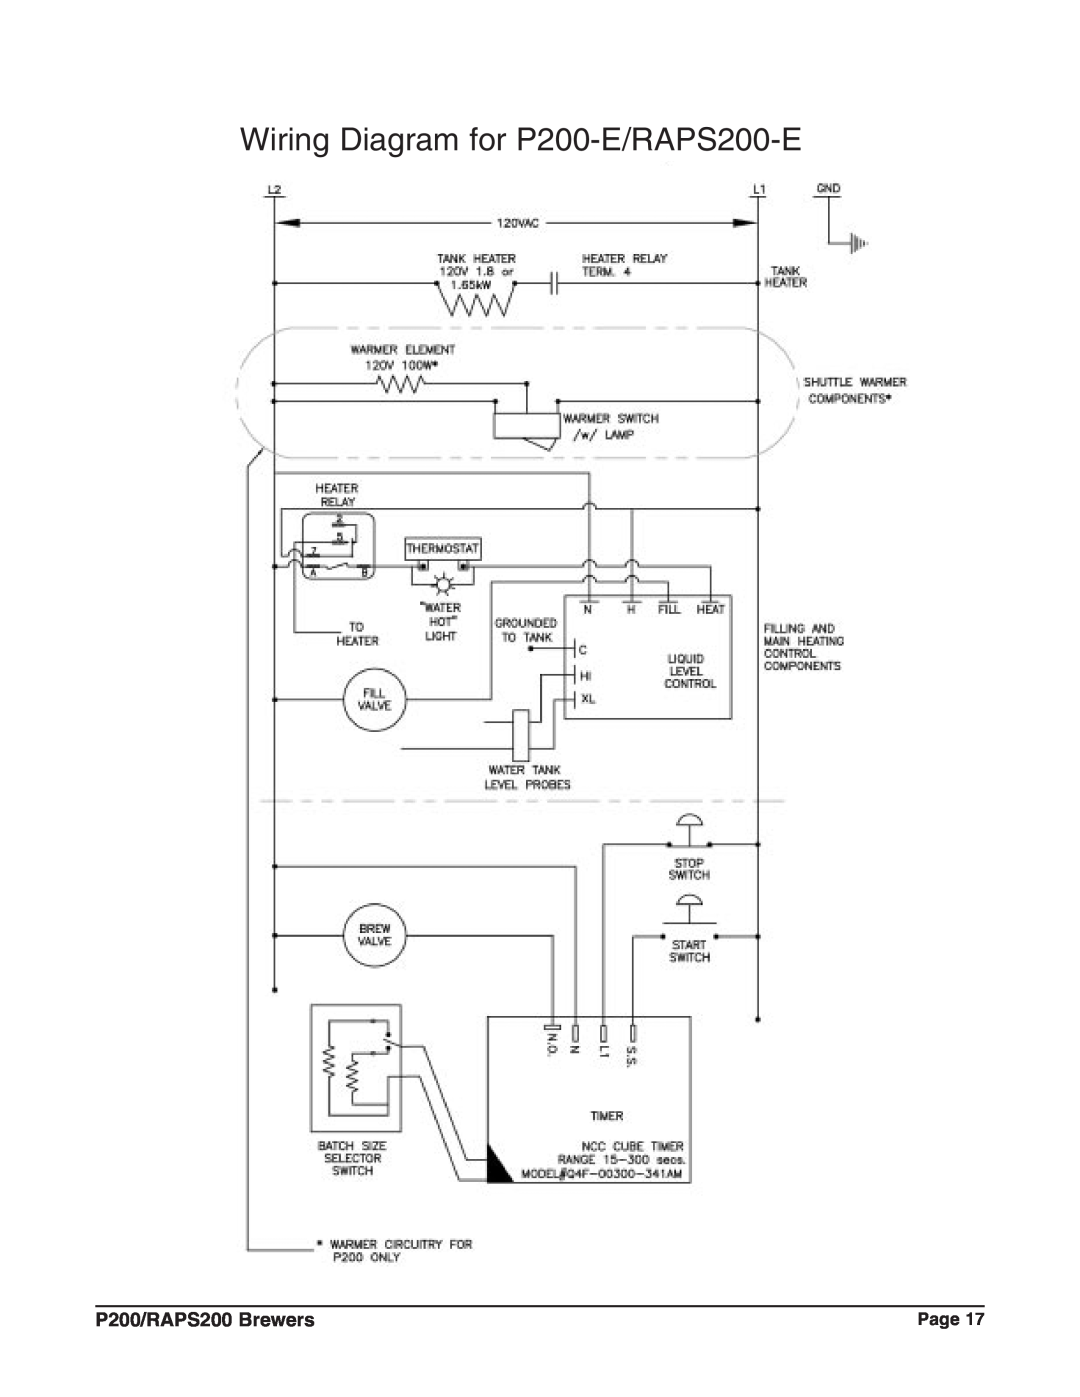 Grindmaster P200E, RAPS200E instruction manual Wiring Diagram for P200-E/RAPS200-E, P200/RAPS200 Brewers 